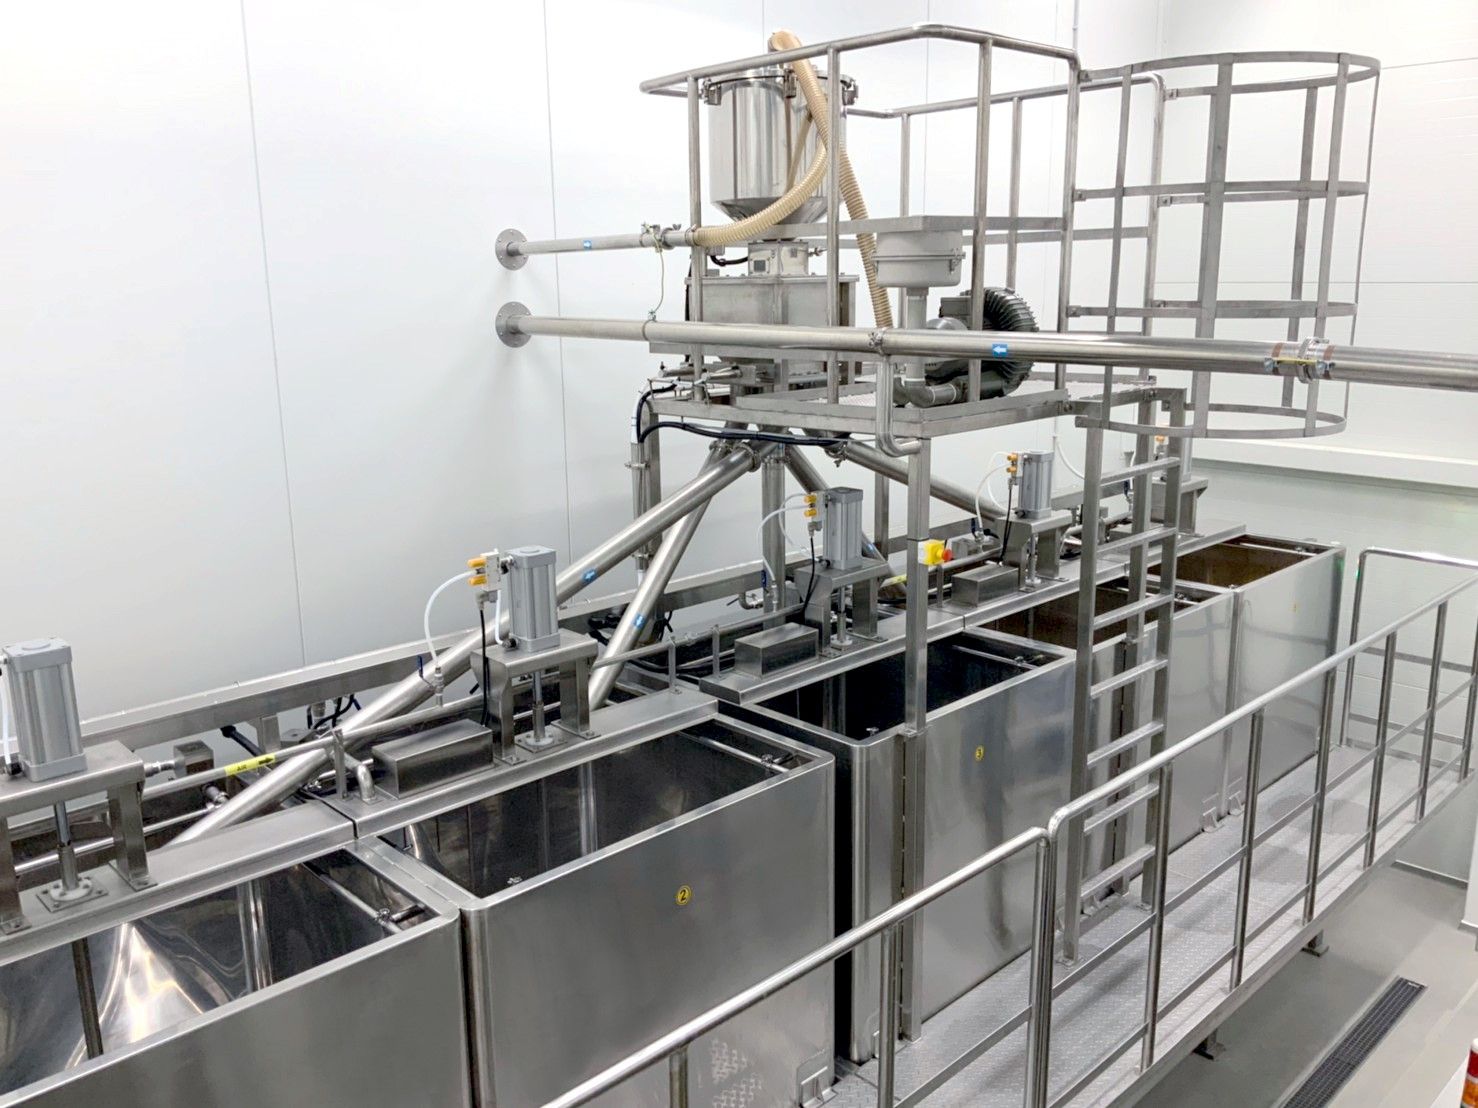 Automatsko upravljanje vremenom namakanja kako bi se osigurala kvaliteta namakanja graha i stabilan omjer namakanja graha, kako bismo osigurali stabilan prinos ekstrakcije sojinog mlijeka tijekom procesa ekstrakcije.